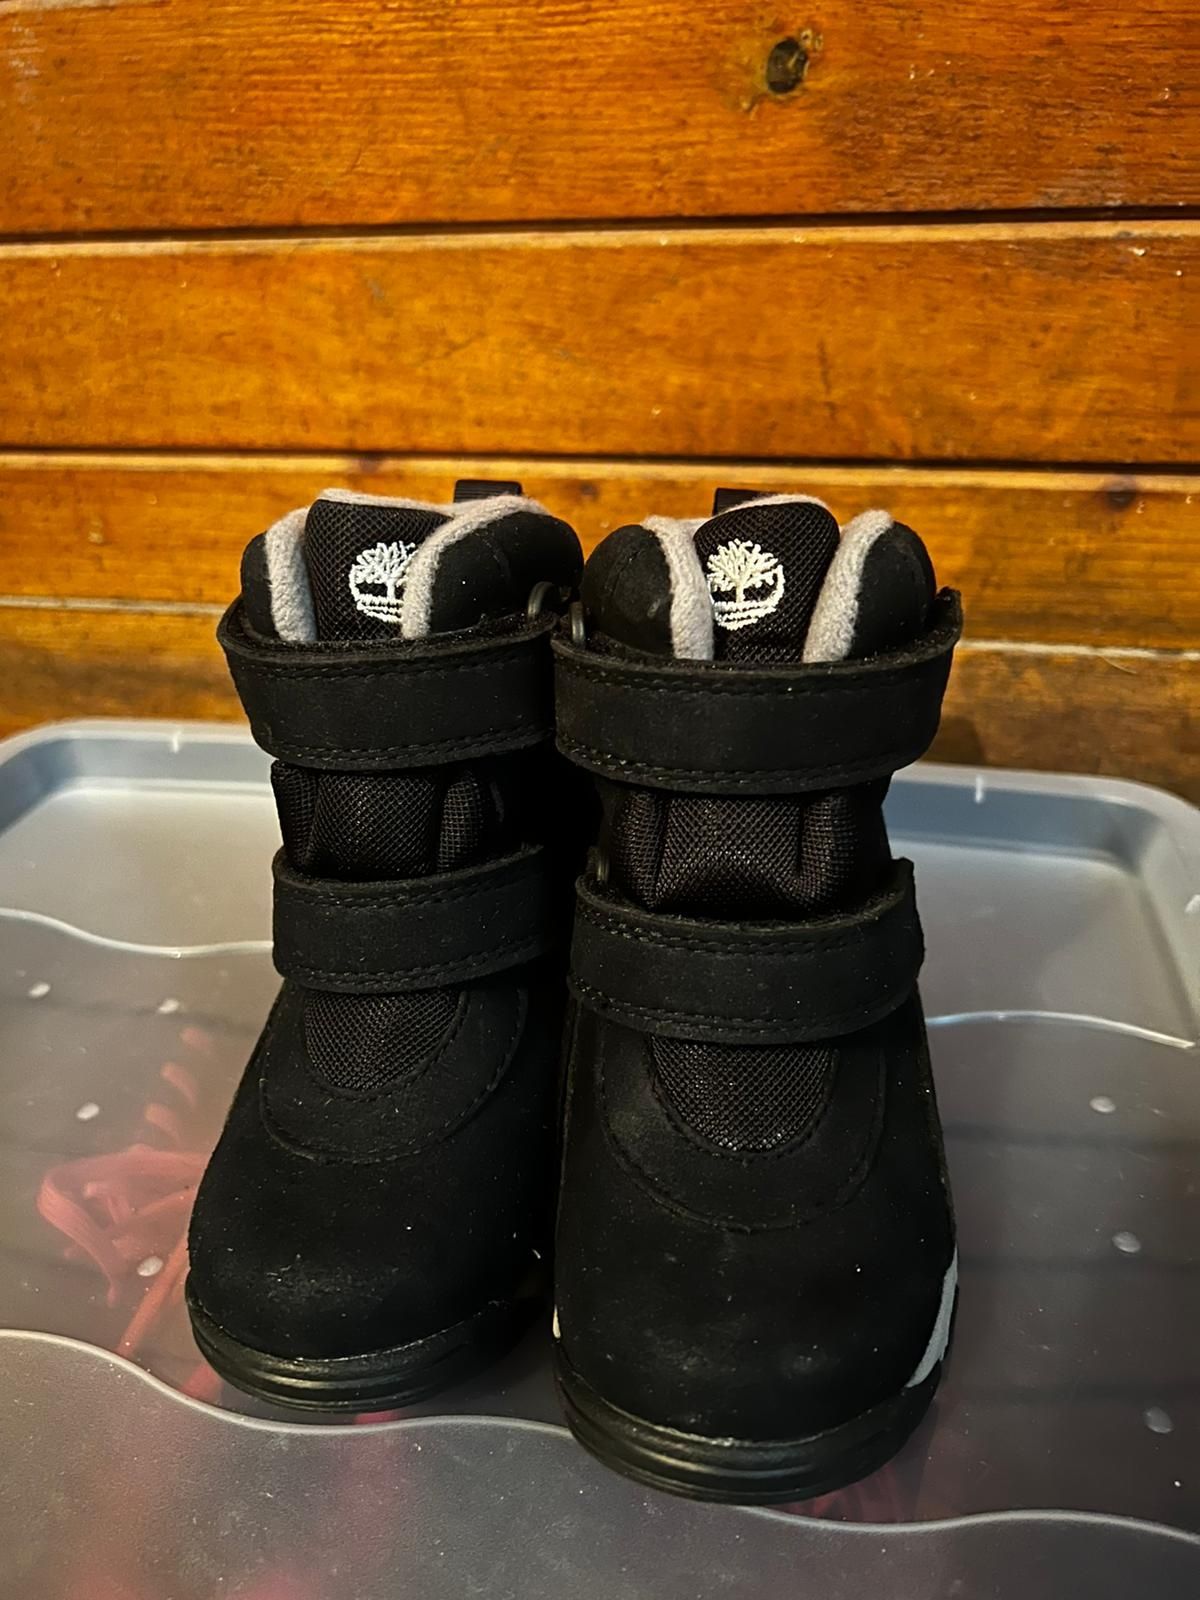 Buty dla dzieci Timberland Chillberg GTX 21 22 i 23 nowe